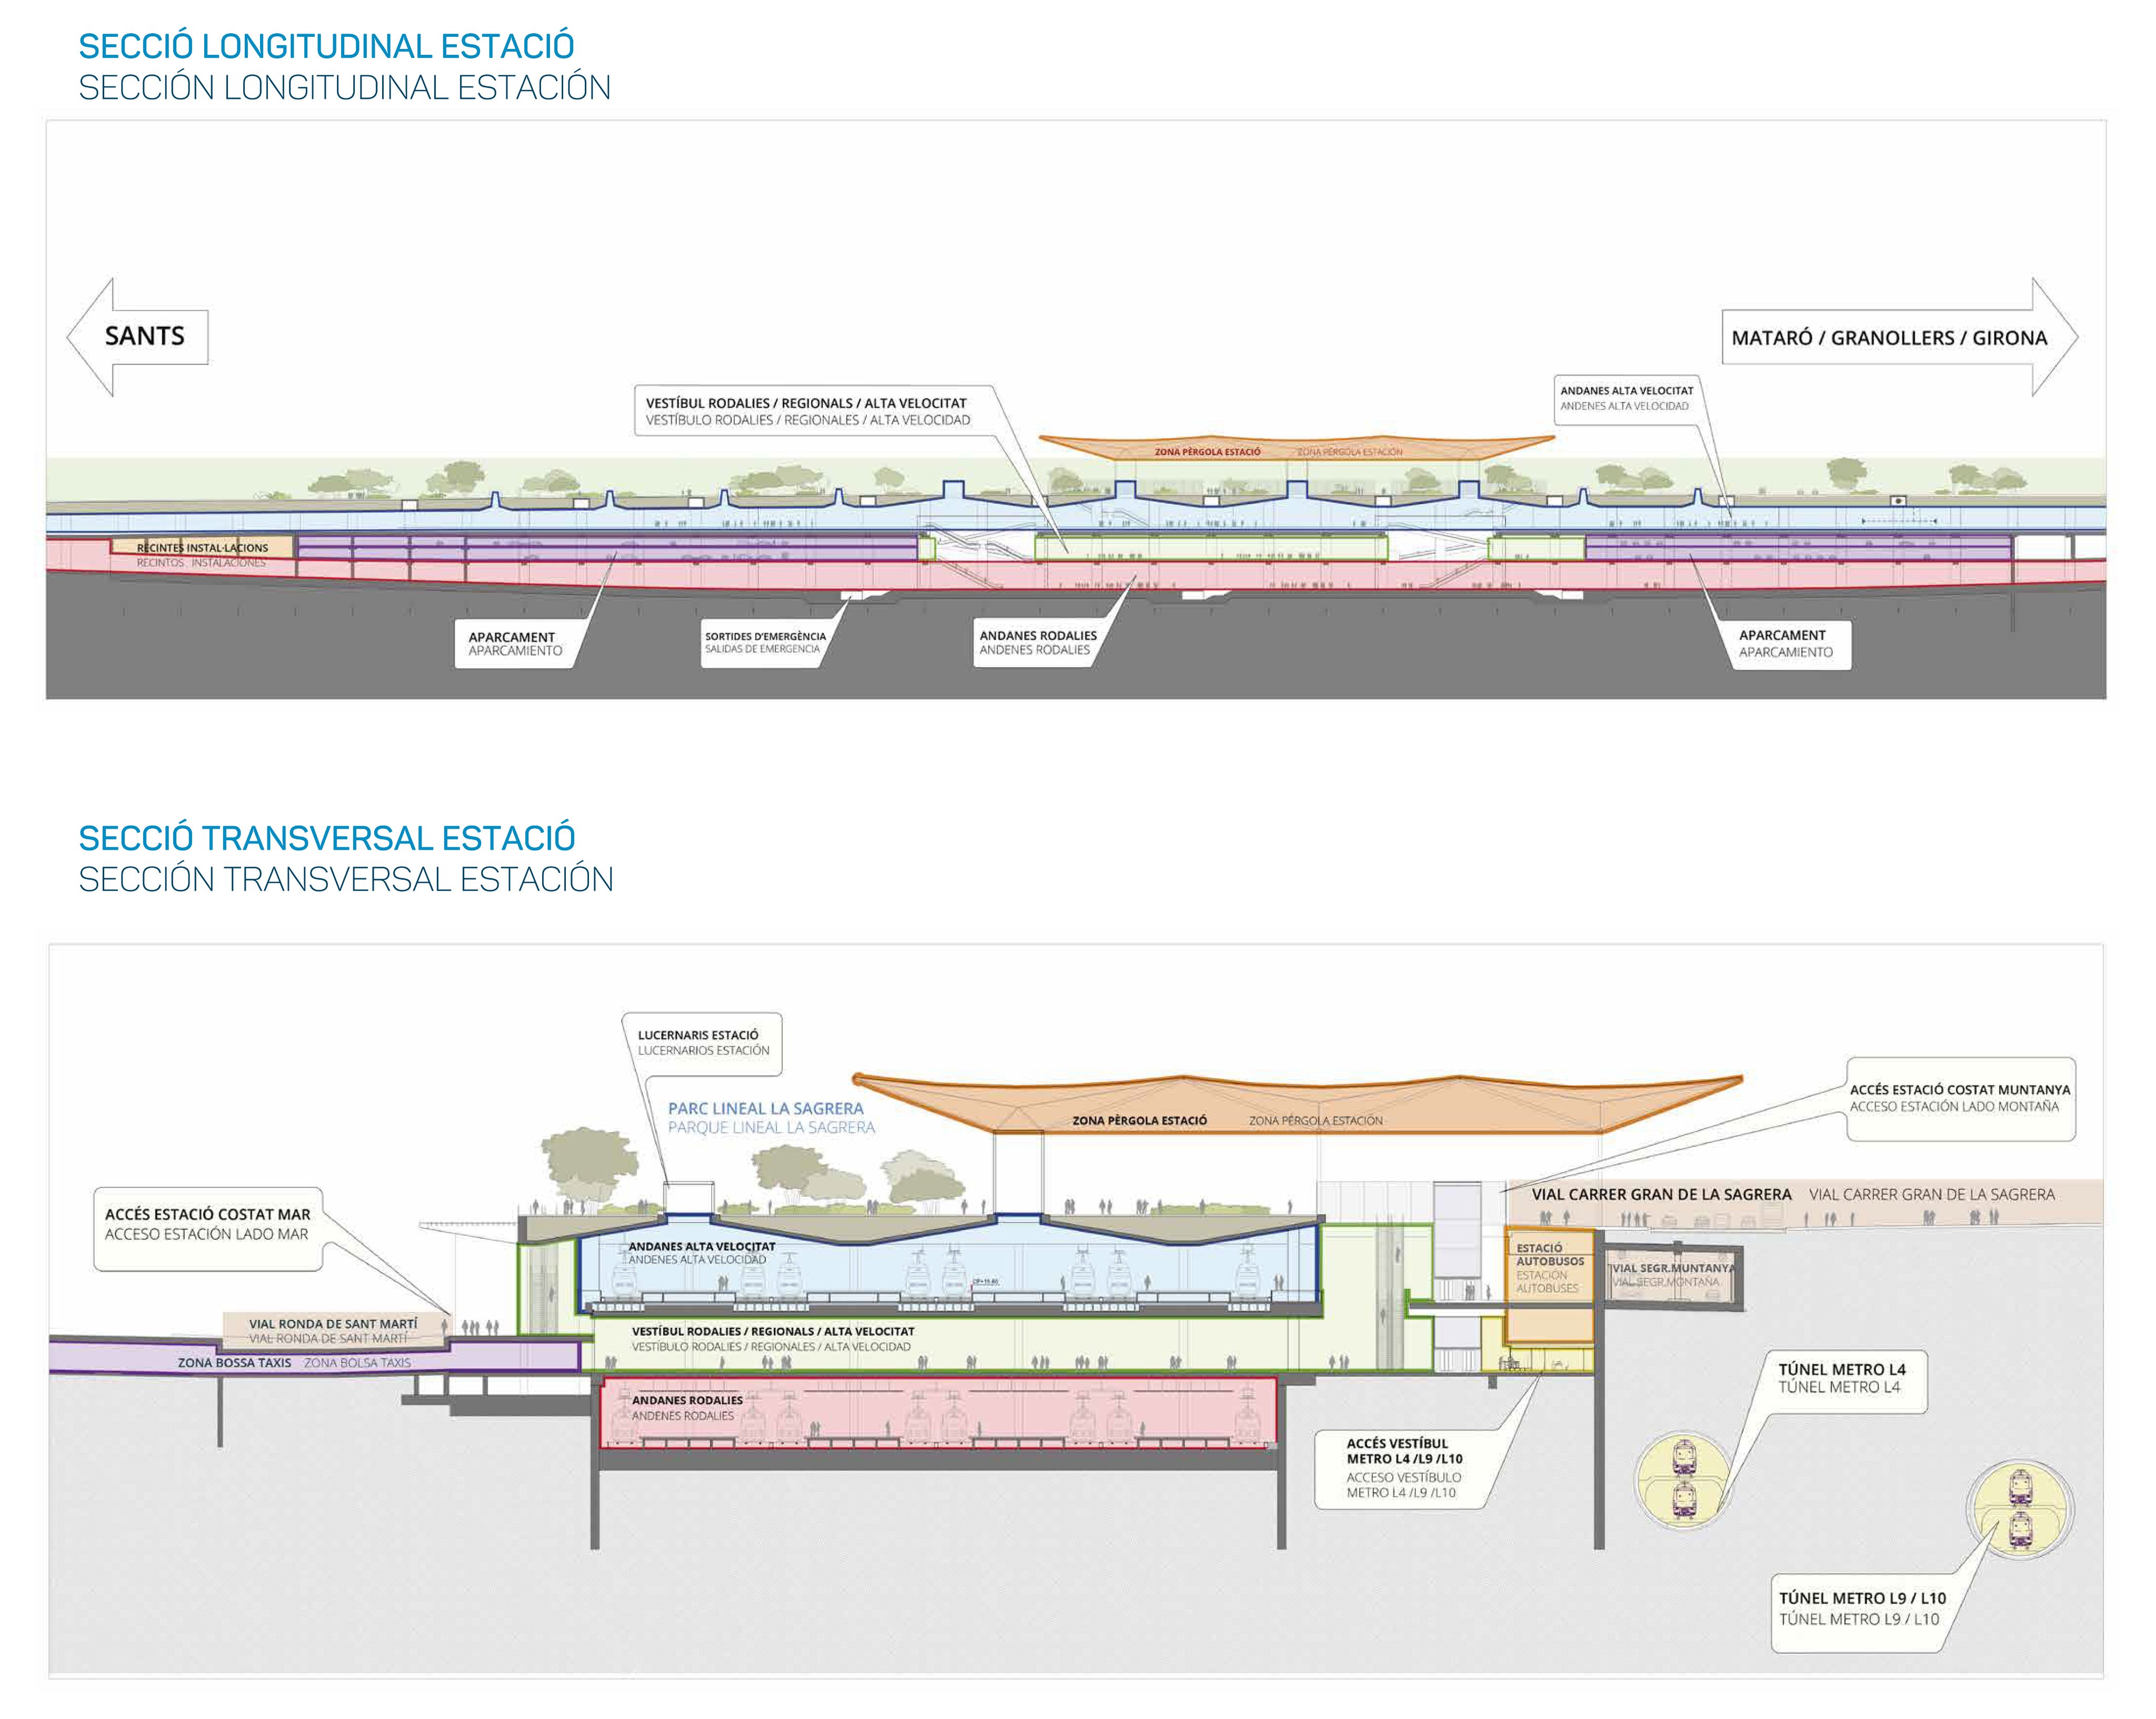 Planos de secciones longitudinal y transversal de la estación.